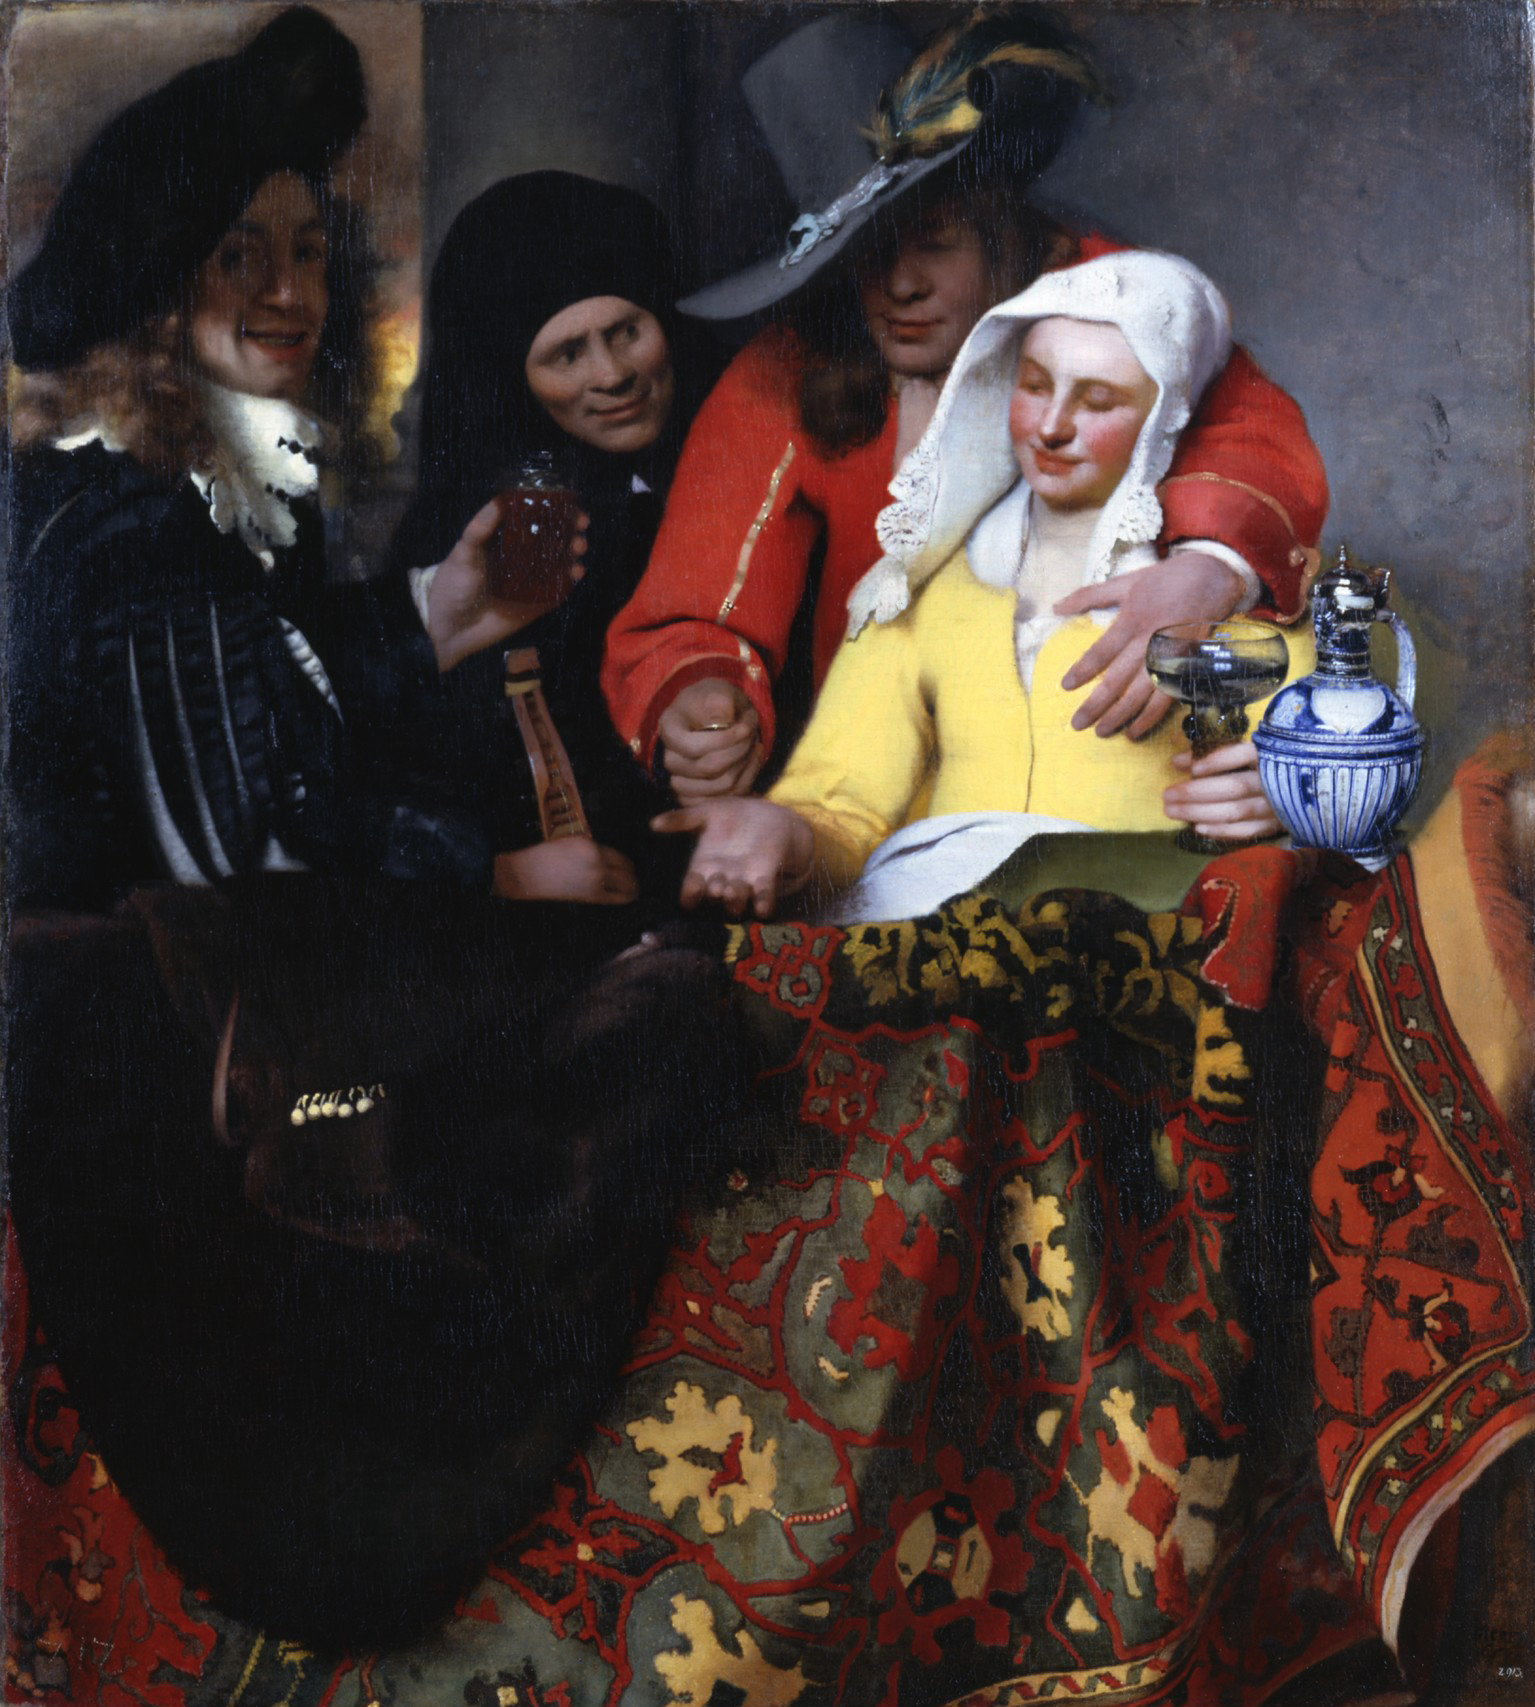 المشترية by Johannes Vermeer - 1656 - 143 x 130 cm 